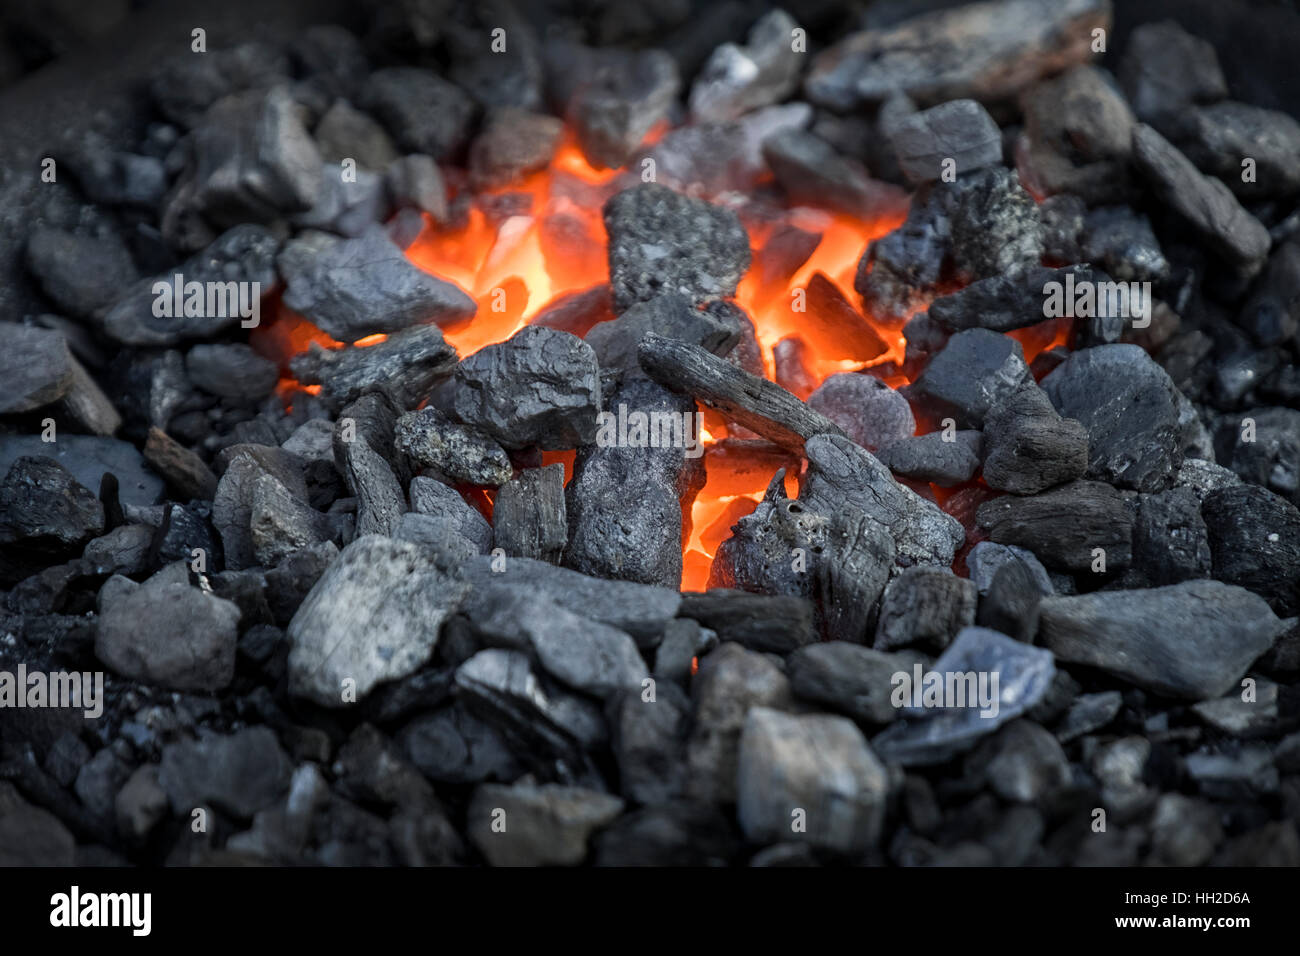 Blacksmiths coals burning for iron work Stock Photo